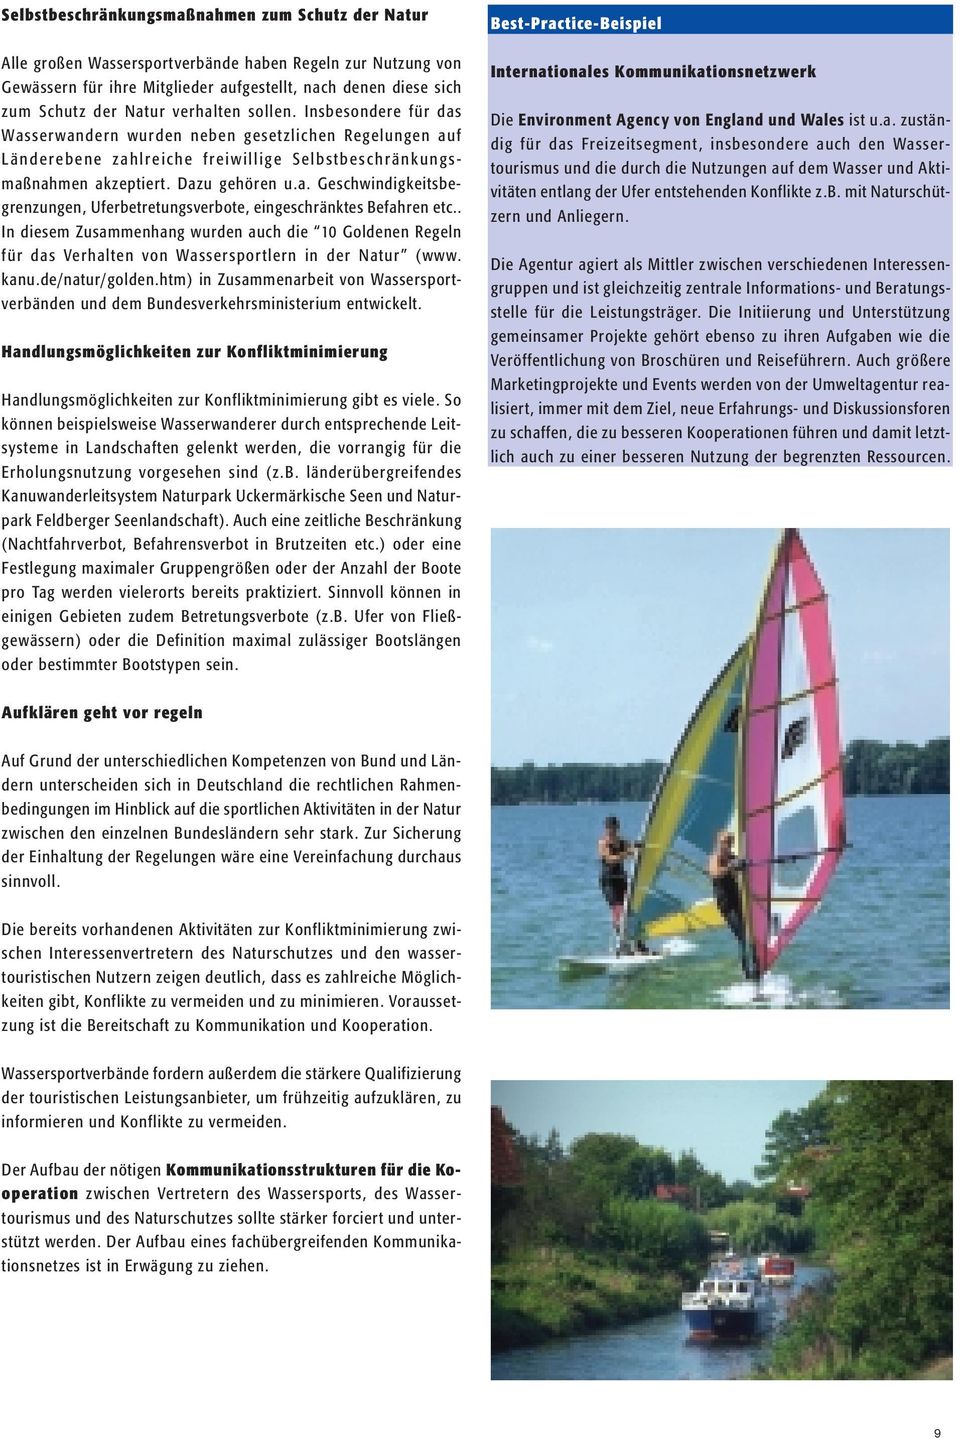 . In diesem Zusammenhang wurden auch die 10 Goldenen Regeln für das Verhalten von Wassersportlern in der Natur (www. kanu.de/natur/golden.